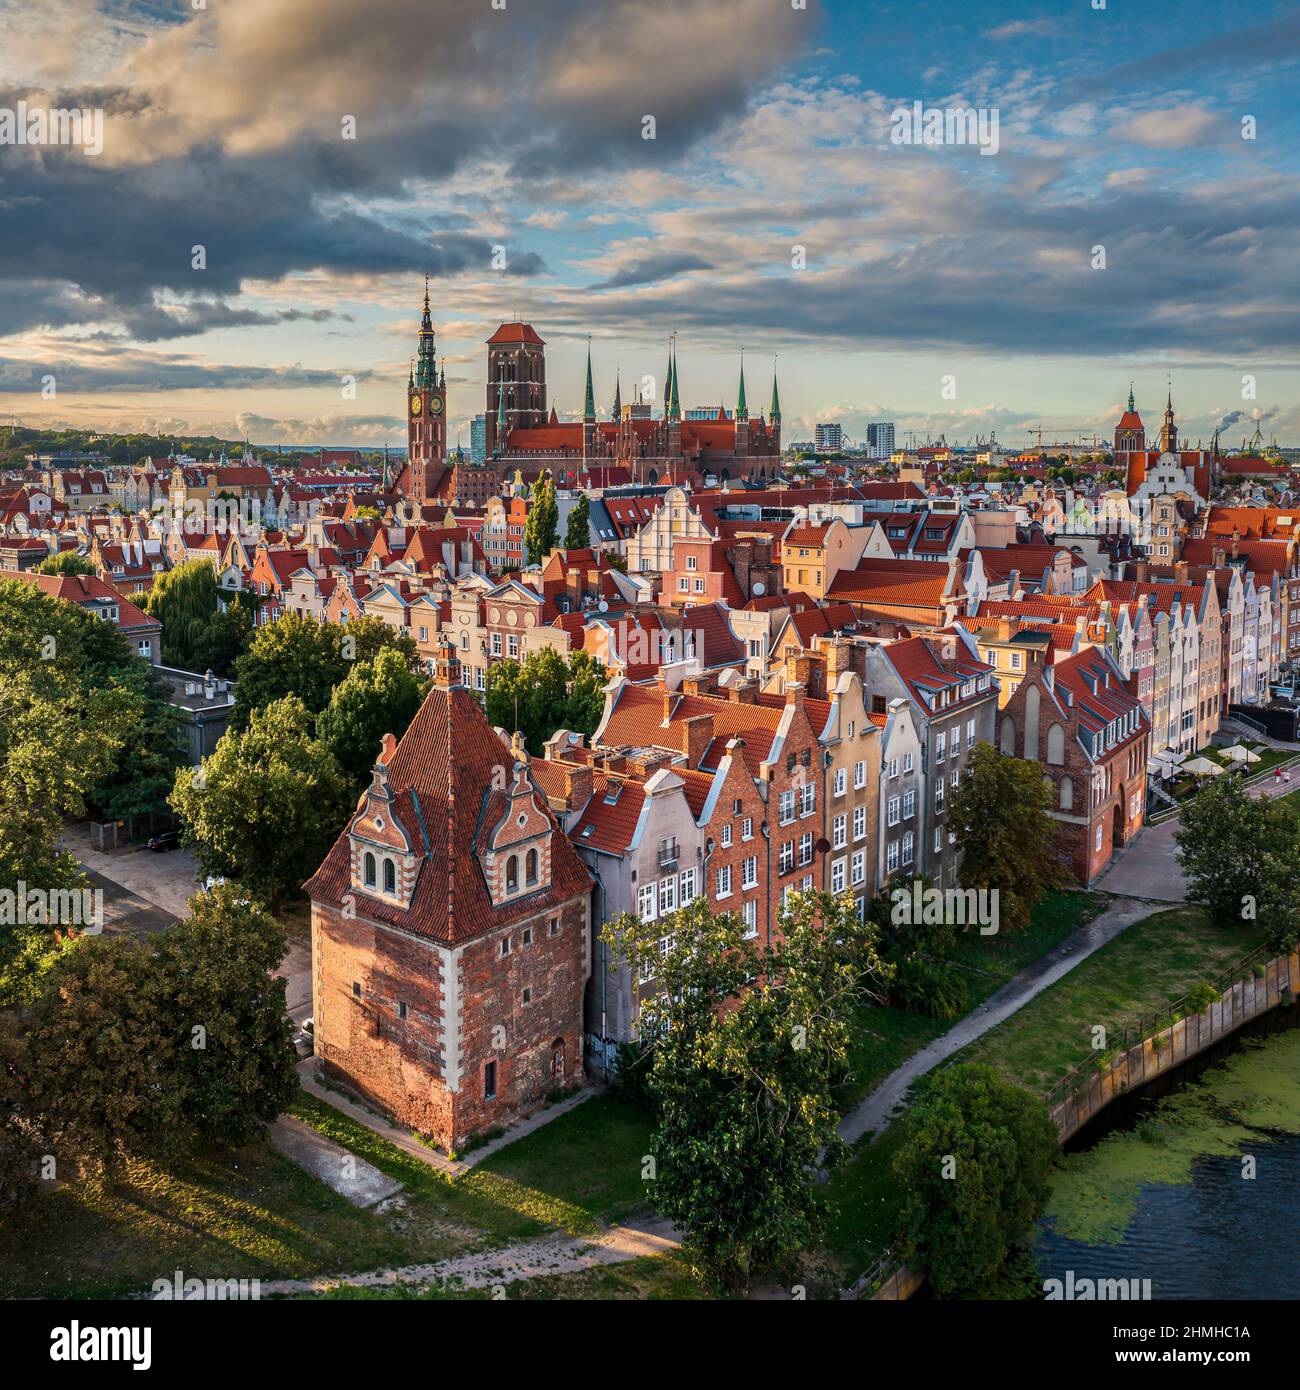 Luftbild Stadtbild Blick auf die Altstadt mit schönen bunten Gebäuden in Danzig, Polen Stockfoto